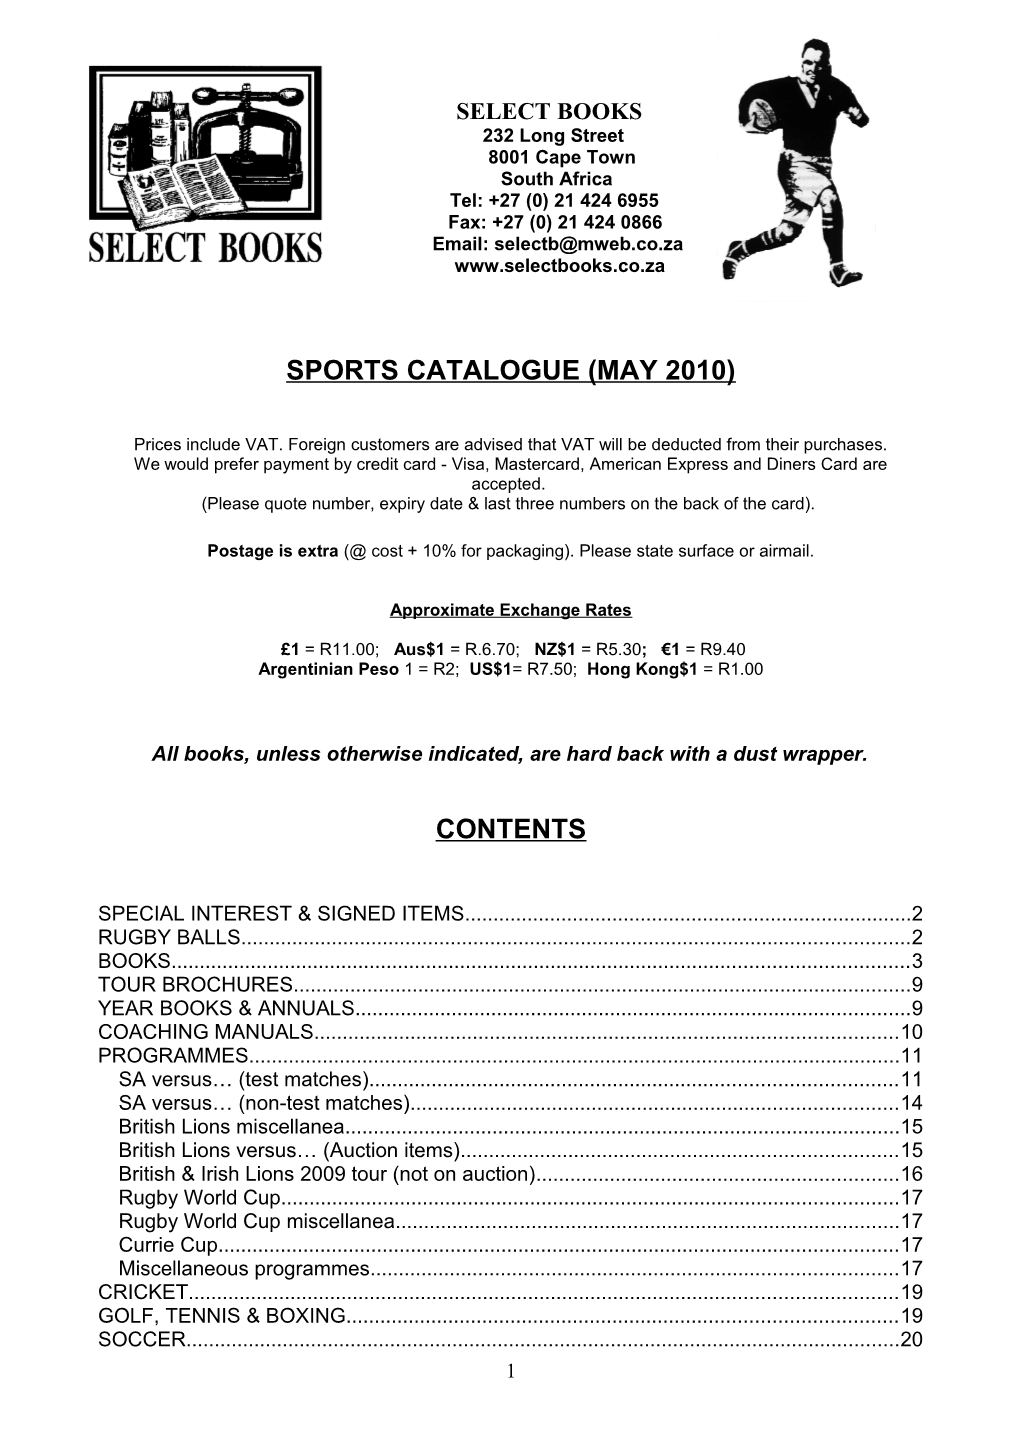 Sports Catalogue (May 2010)